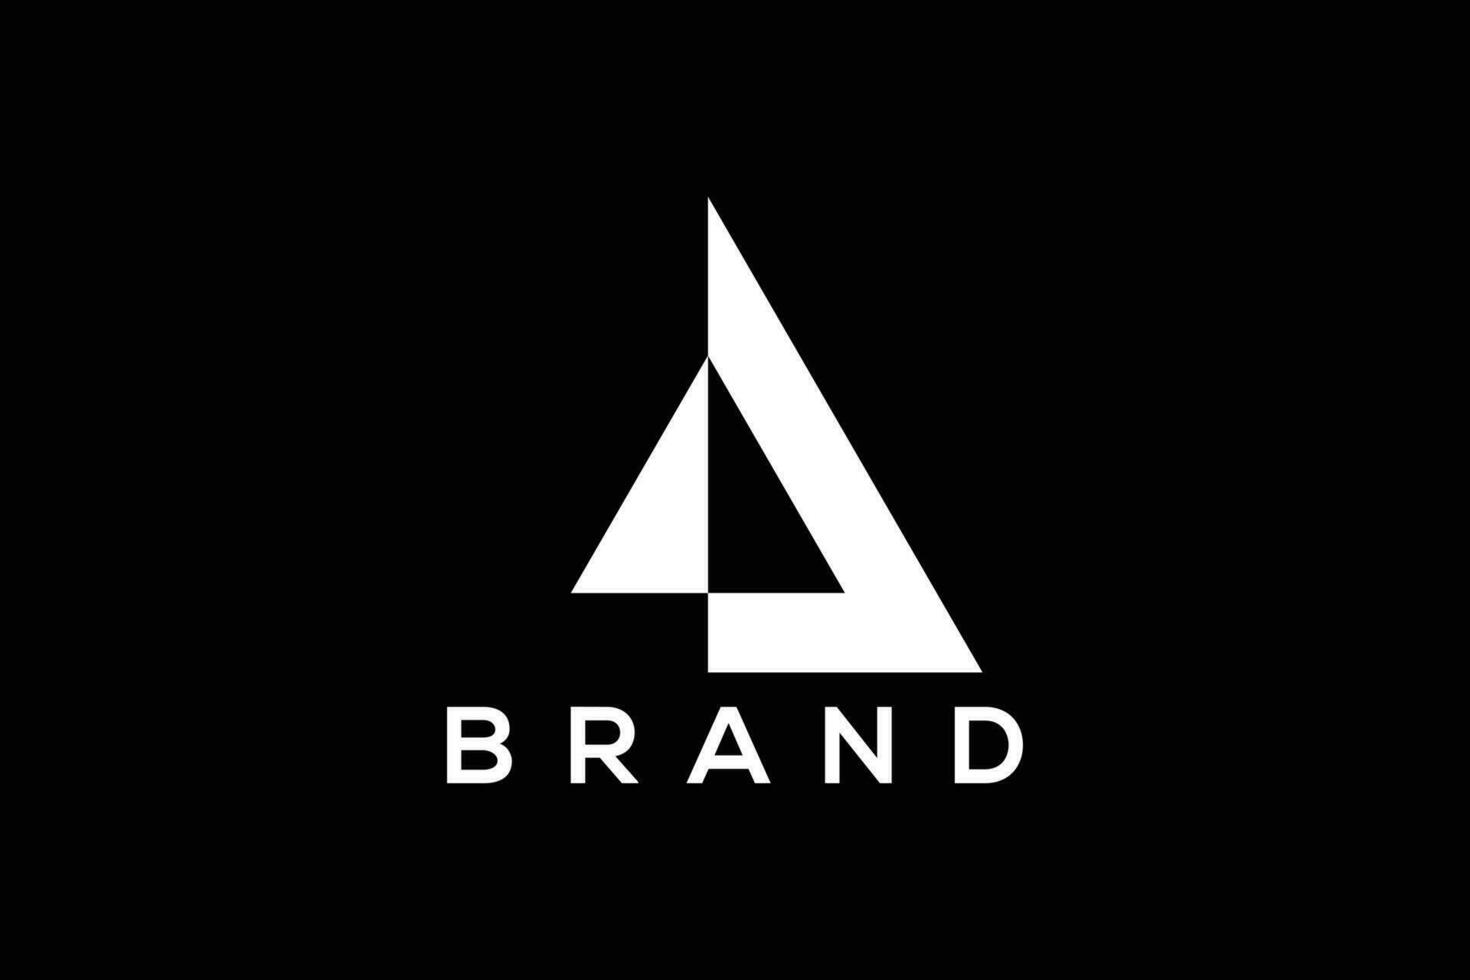 minimal et abstrait Triangle vecteur logo conception